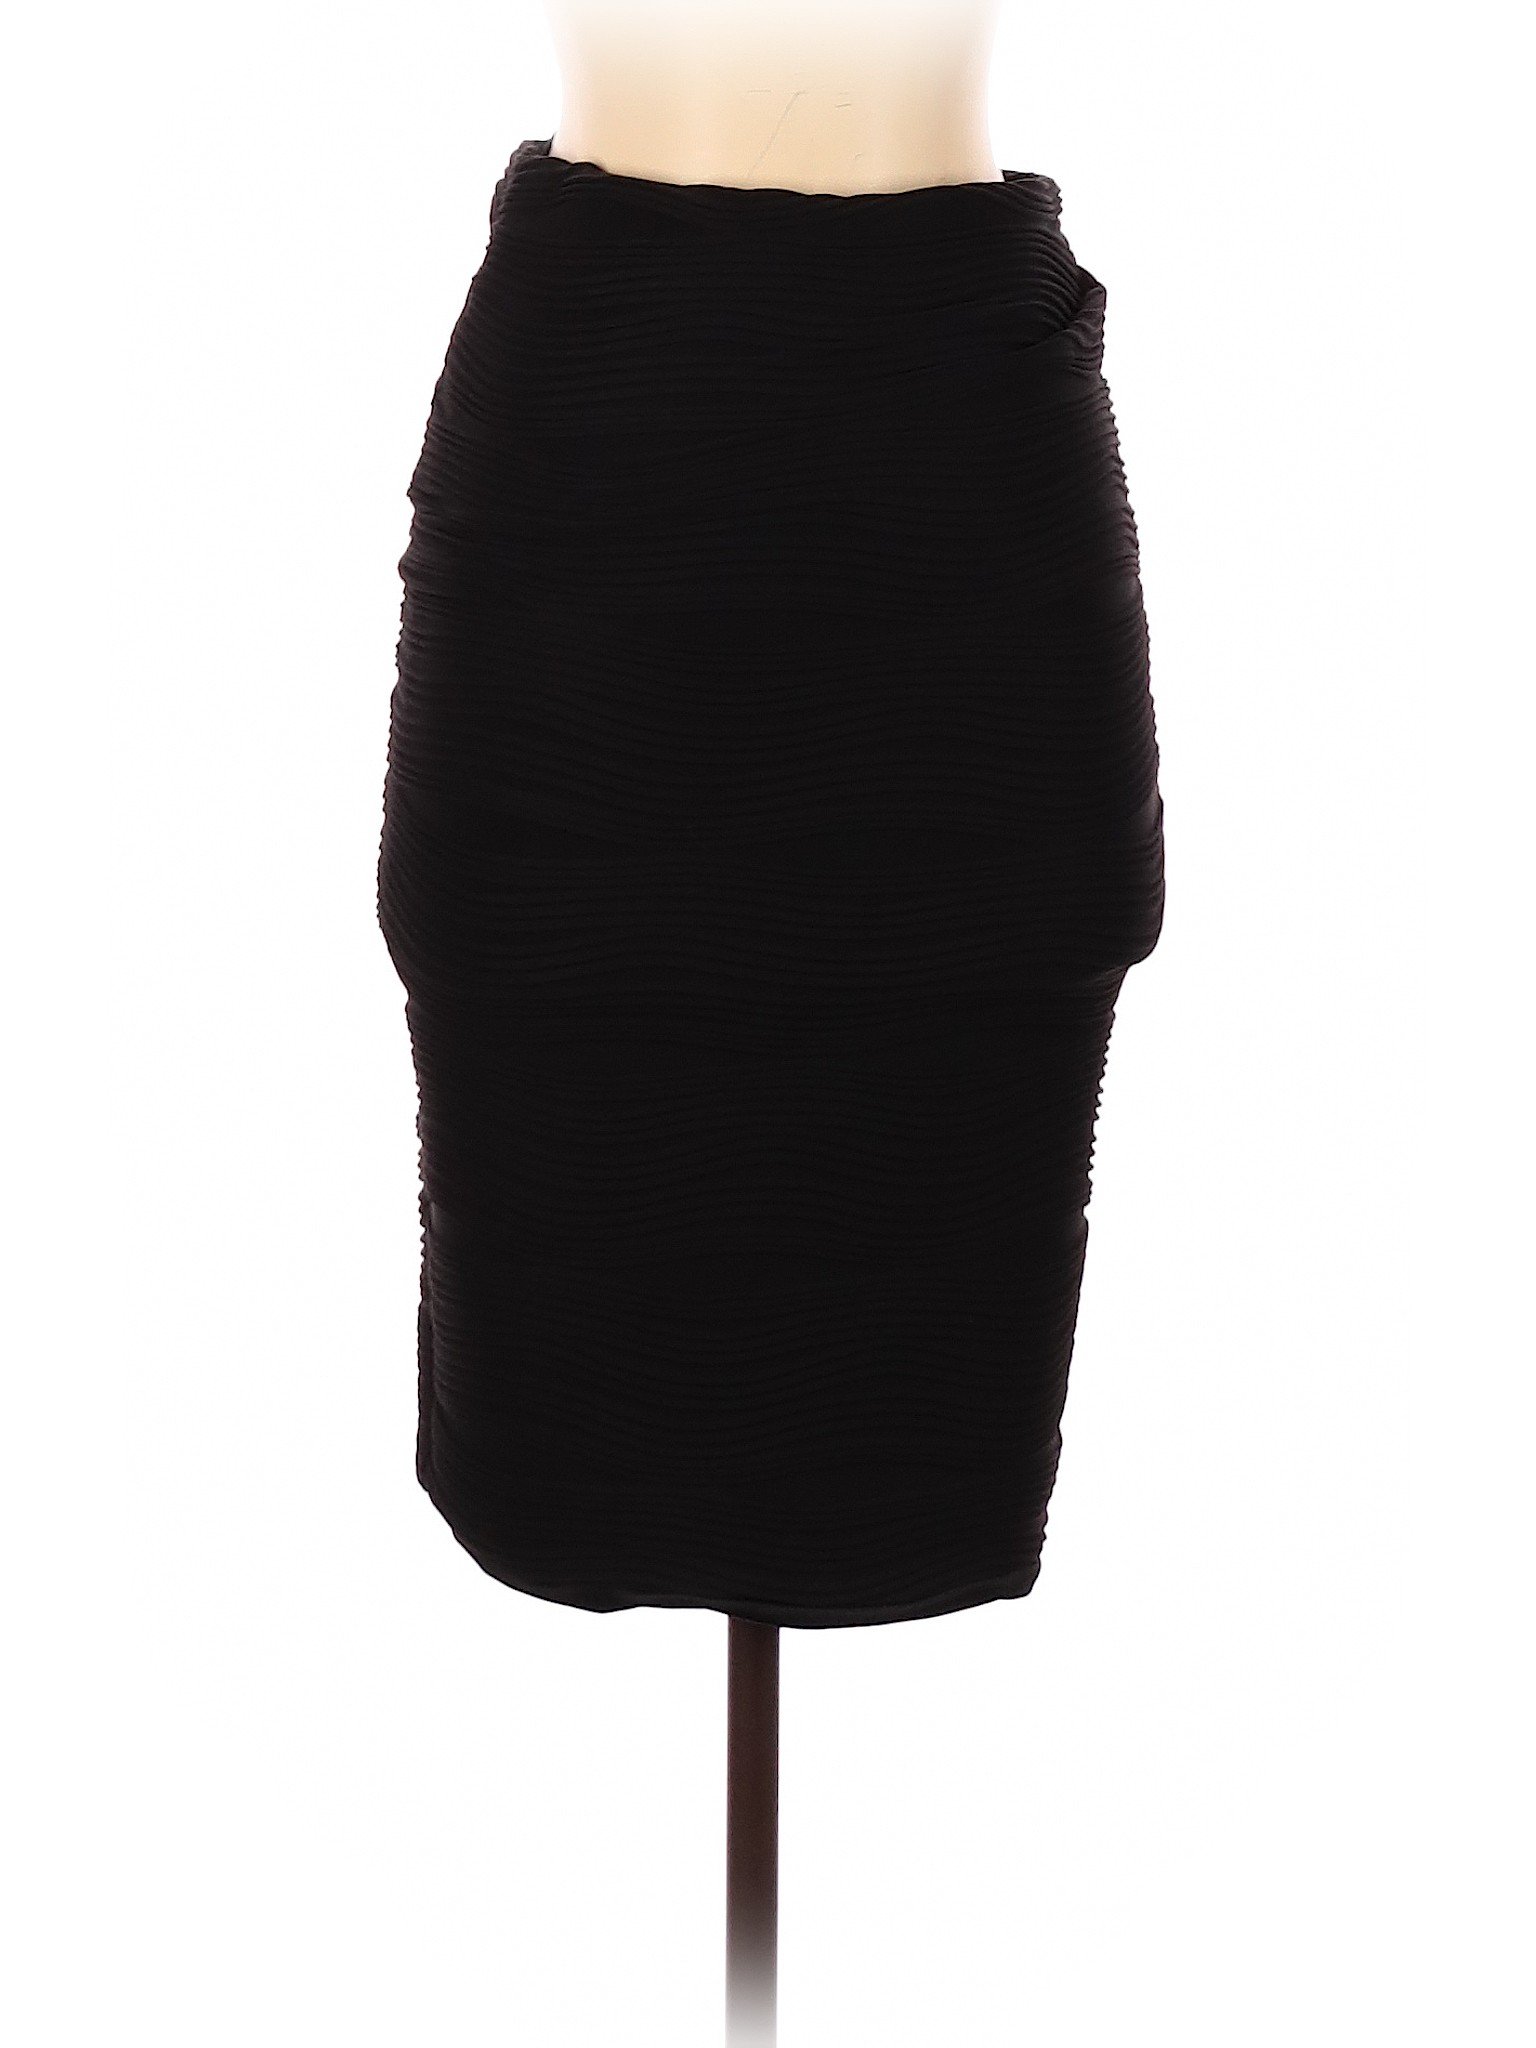 Brat Star Women Black Casual Skirt S | eBay